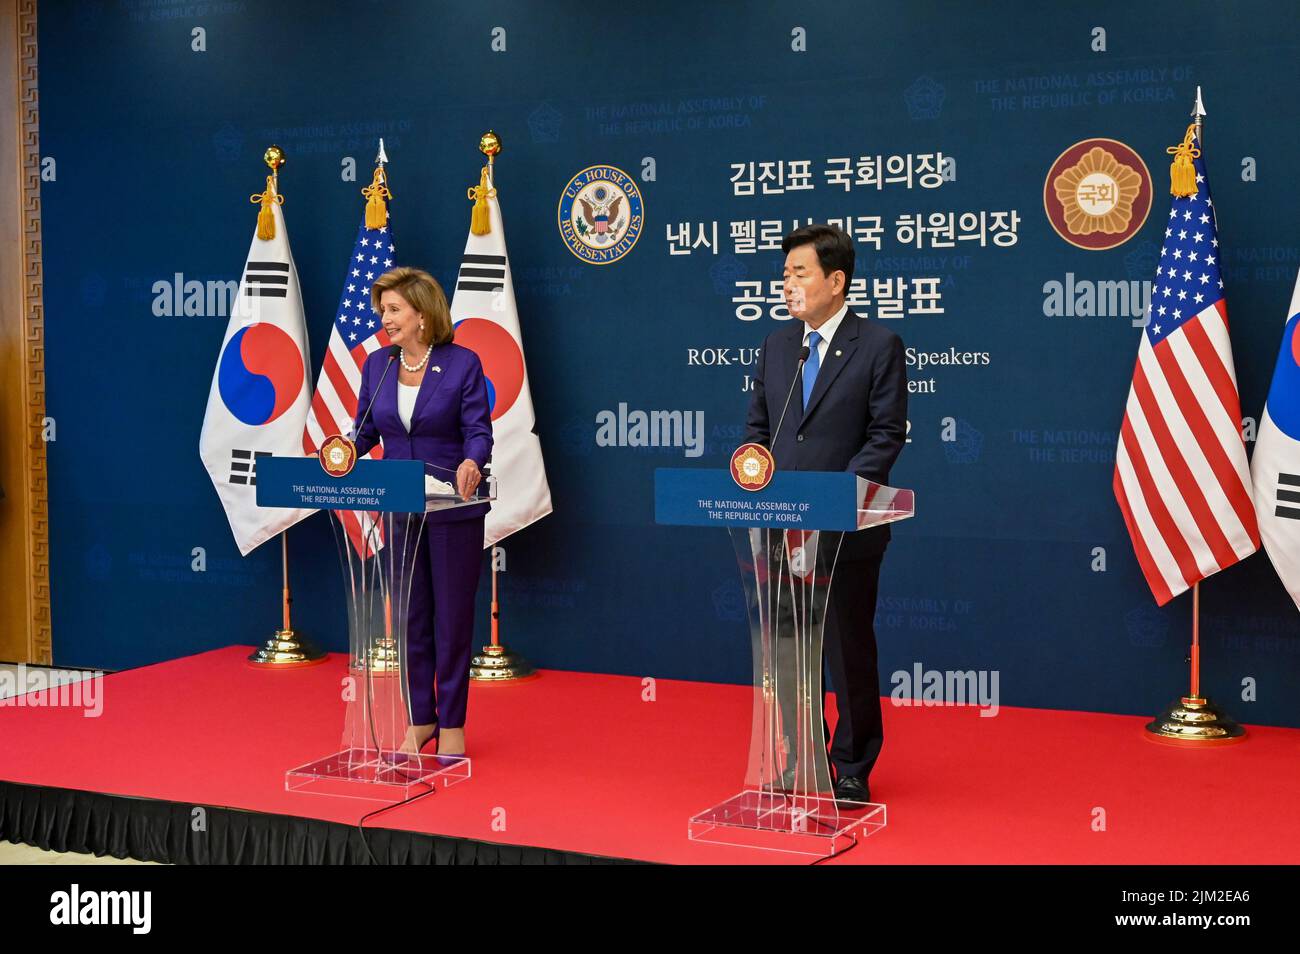 Séoul, Corée du Sud. 04th août 2022. Nancy Pelosi, Présidente de la Chambre des représentants des États-Unis, et Kim Jin-pyo, Présidente de l'Assemblée nationale de la Corée du Sud, tiennent une conférence de presse après une réunion à Séoul, en Corée du Sud, jeudi, à 4 août 2022. Le Président Pelosi s'est rendu en Corée du Sud après un voyage à Taïwan qui a suscité une réaction furieuse de la part de la Chine. Photo de Thomas Maresca/UPI crédit: UPI/Alay Live News Banque D'Images